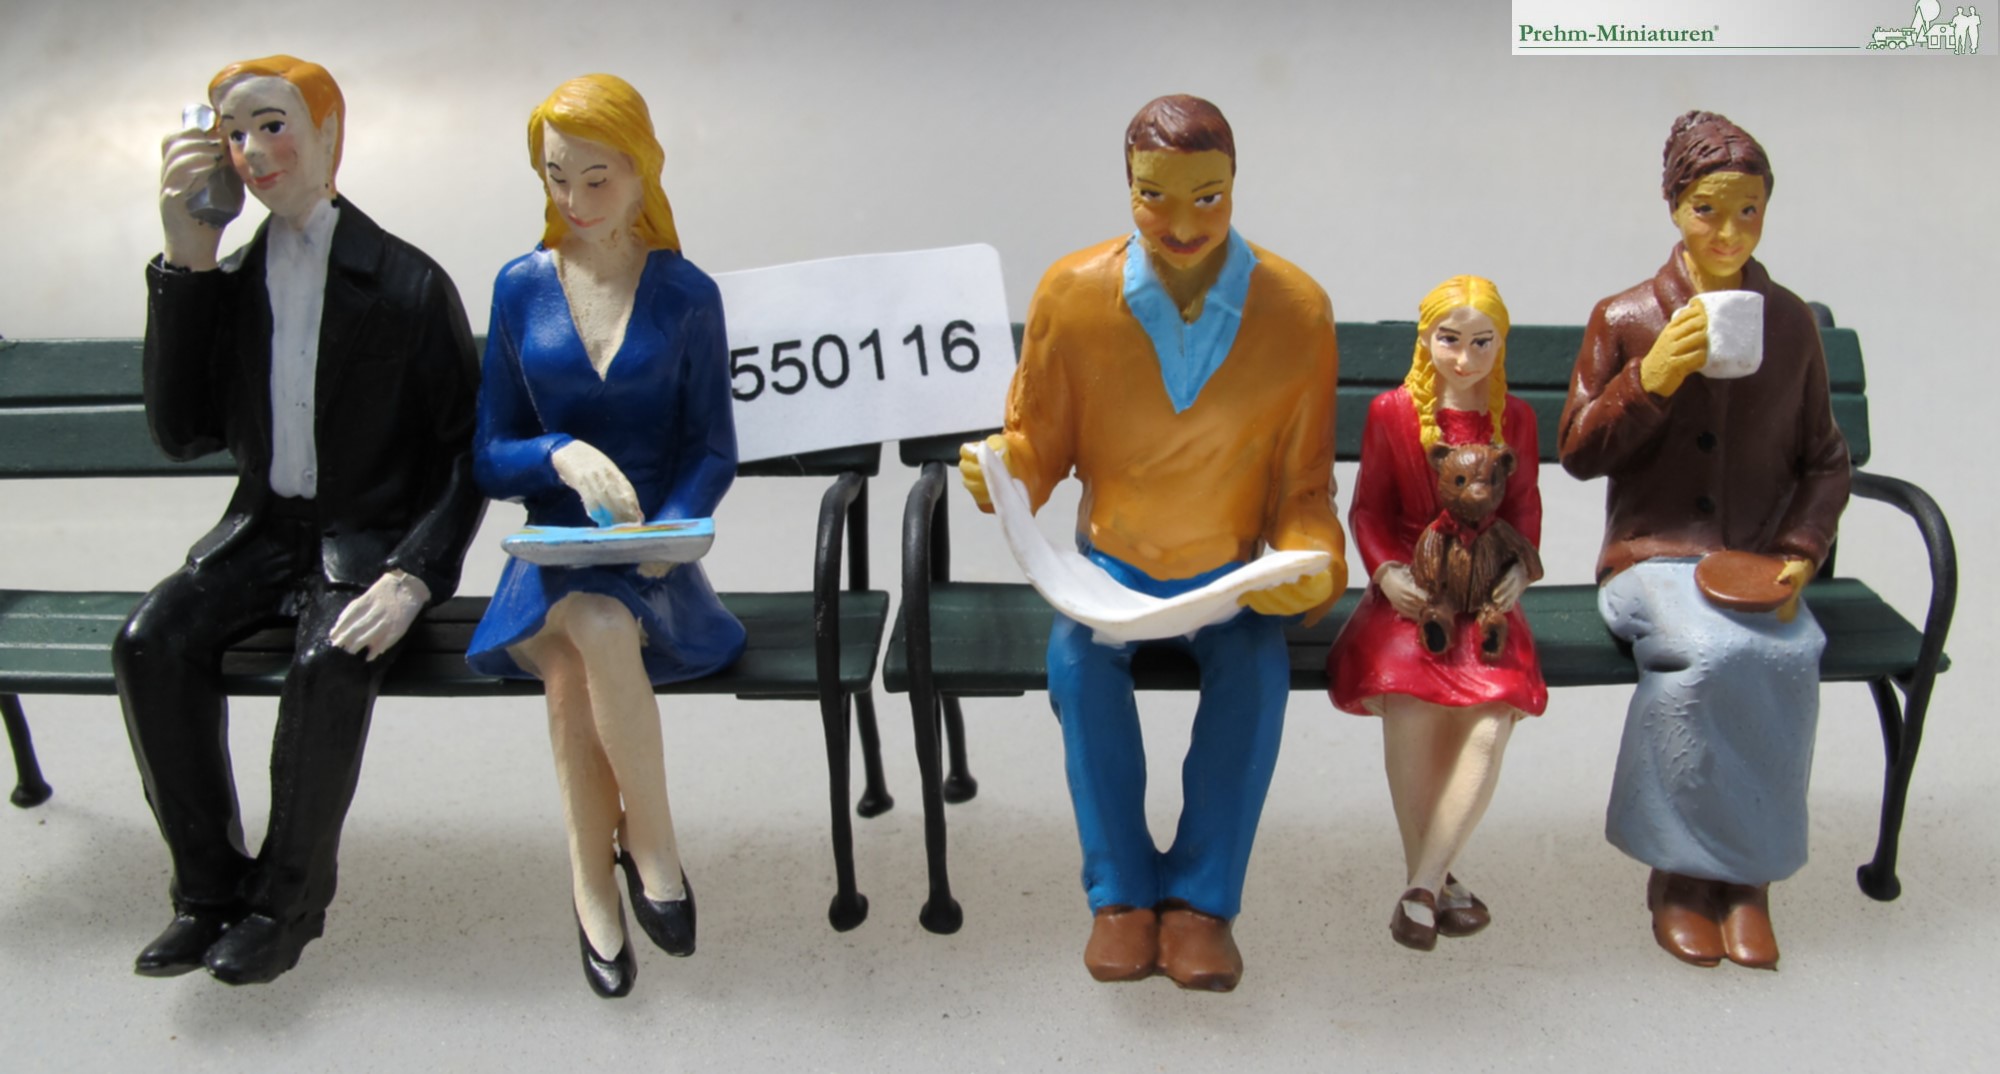 Beispiel - Artikel Nummer 550116 - 5 sitzende Figuren - Kunststoff